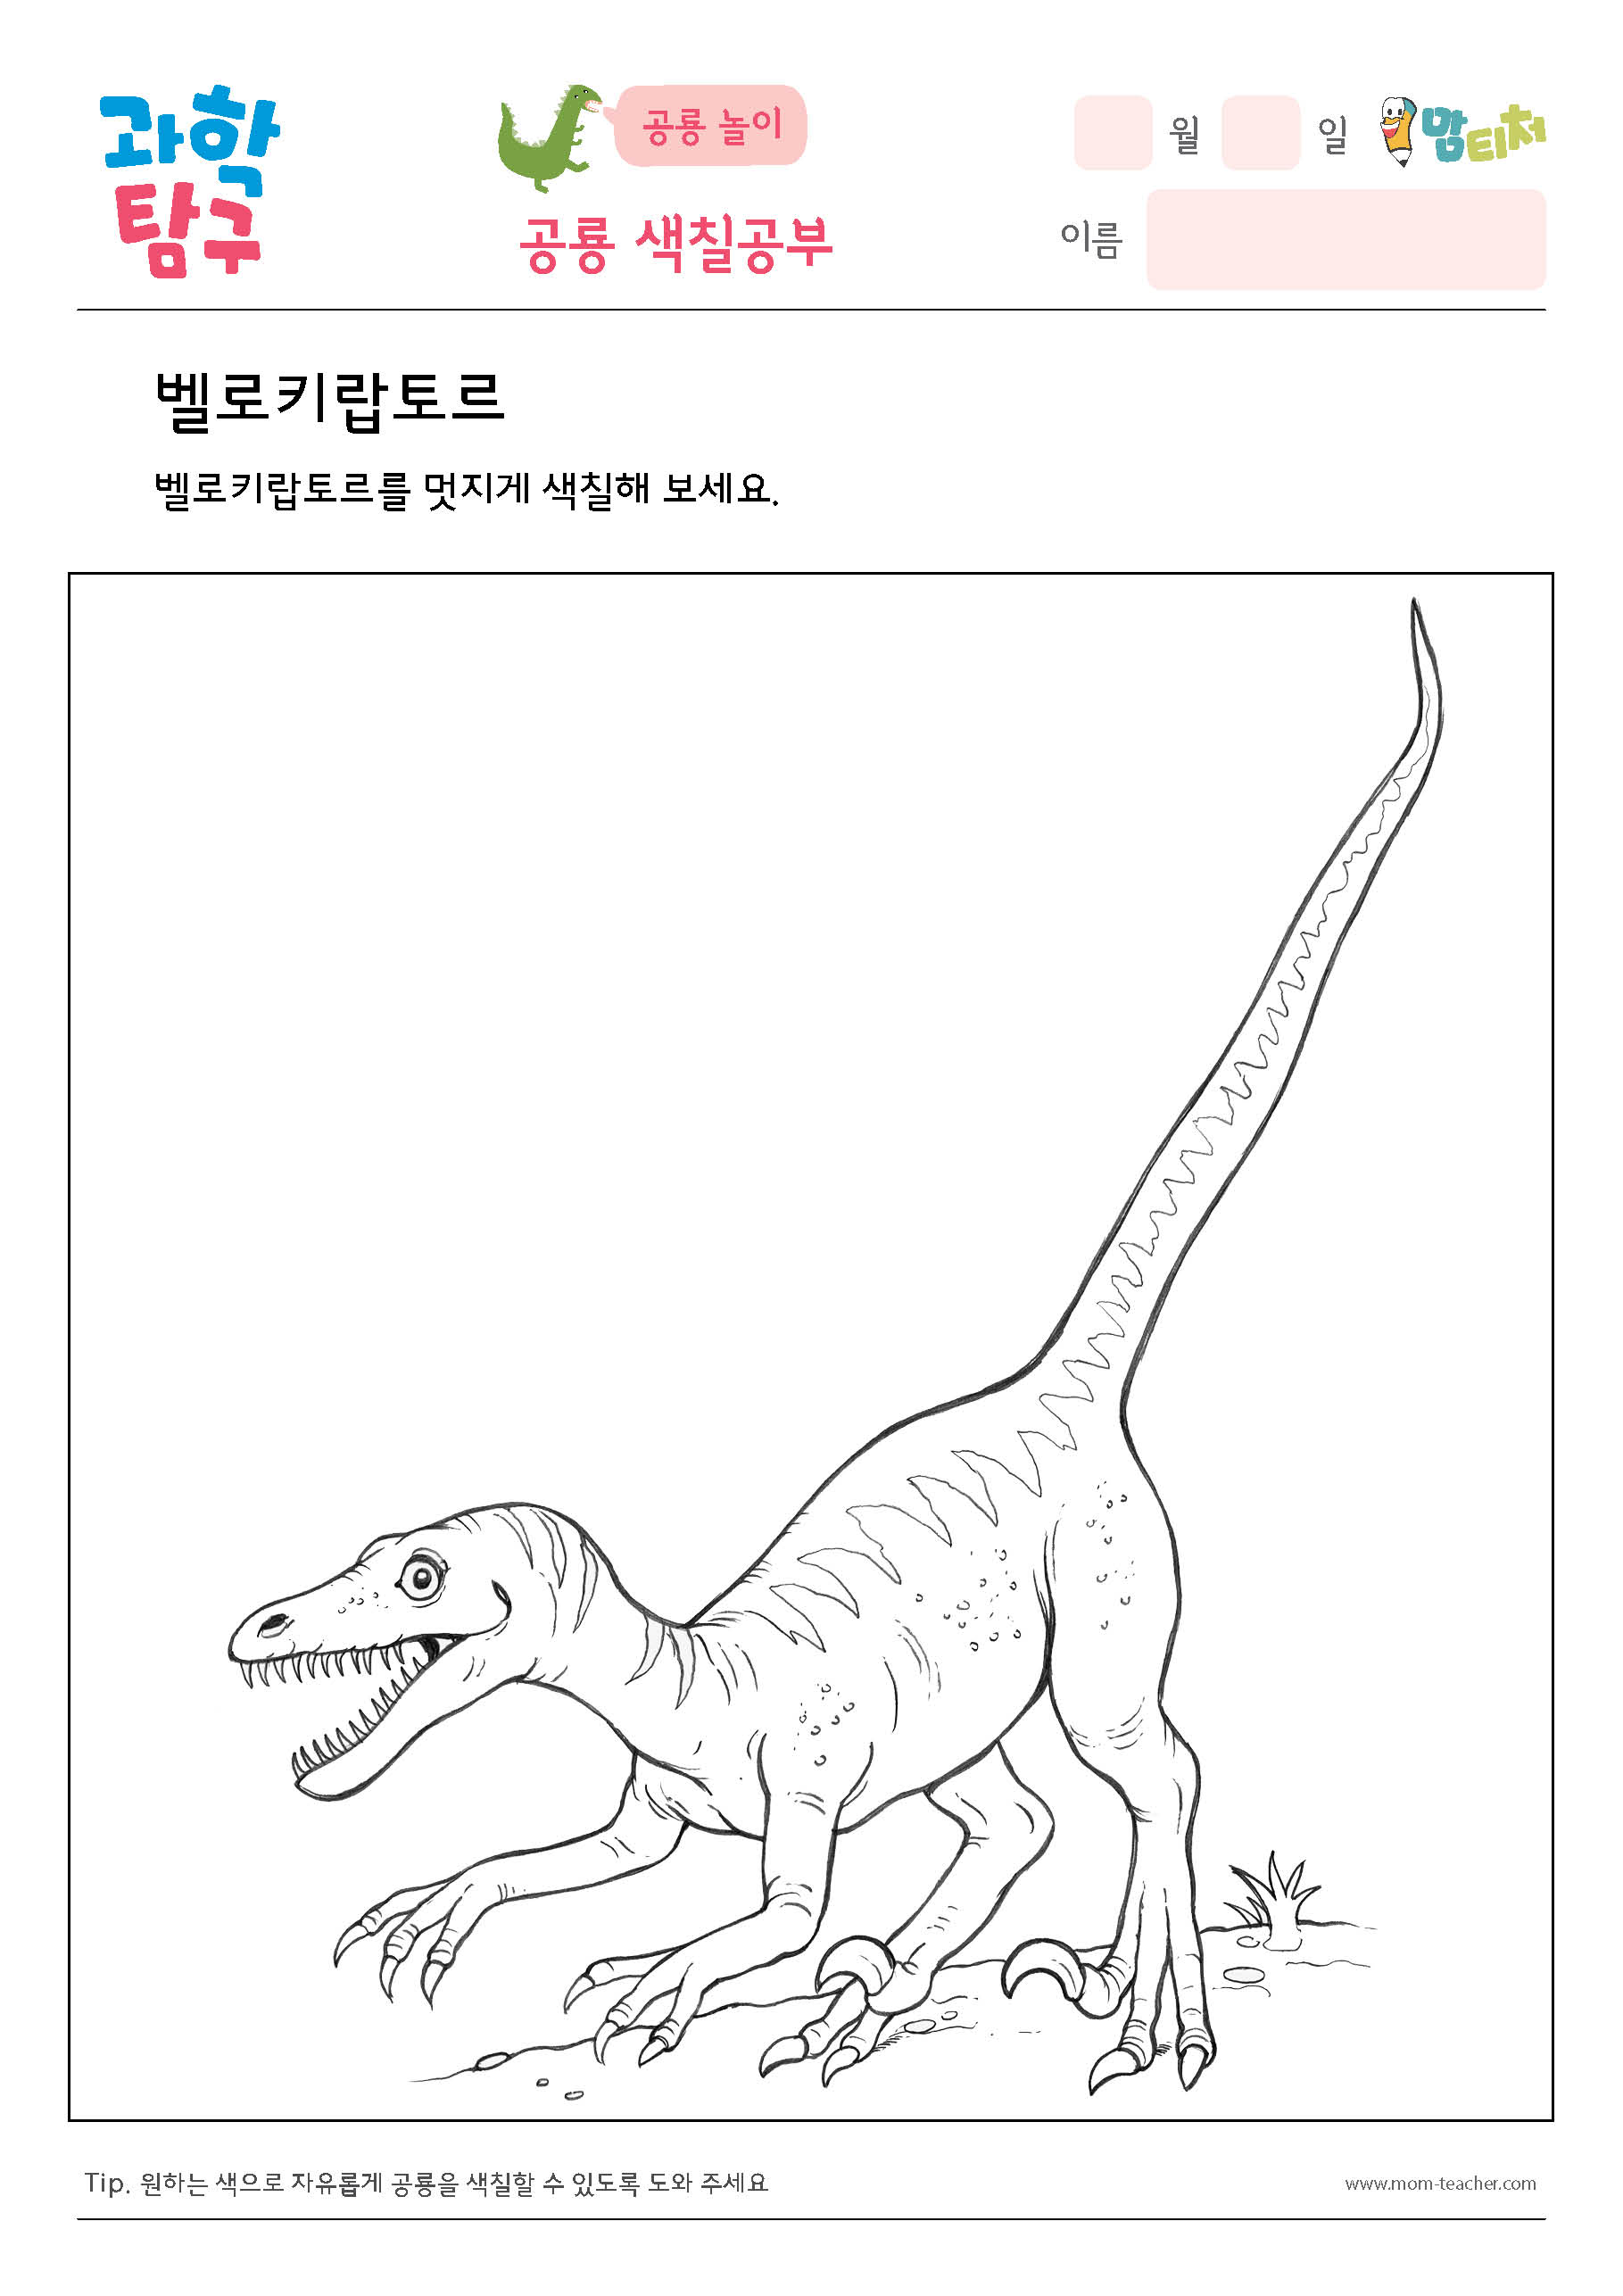 공룡색칠- 벨로키랍토스